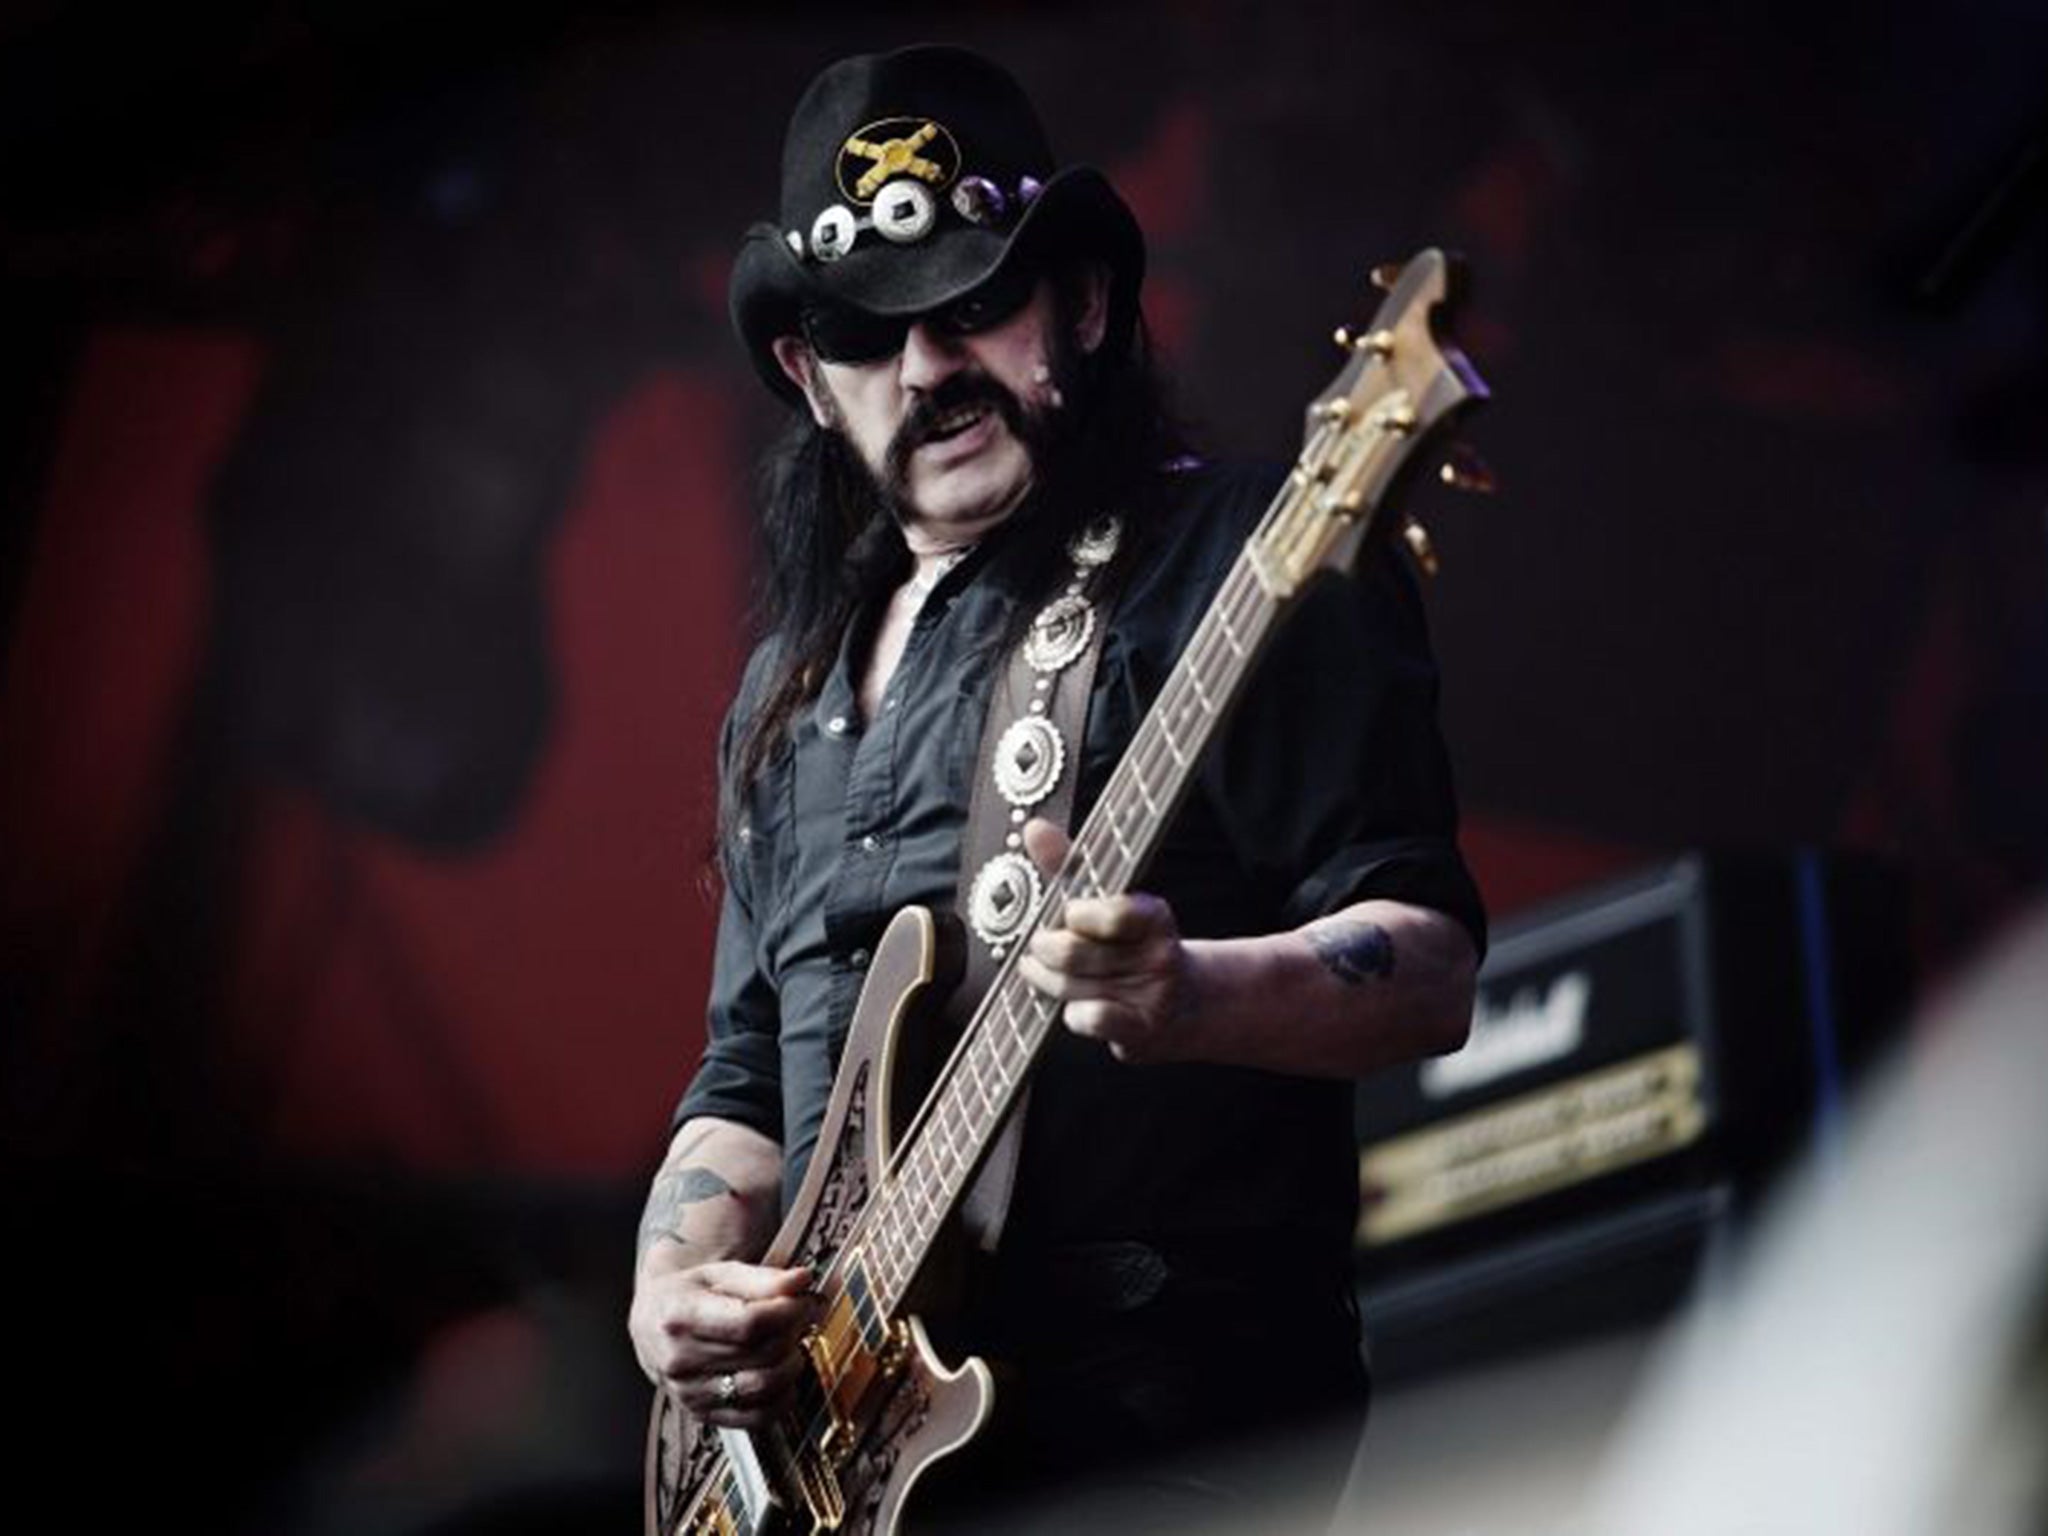 Motörhead frontman Lemmy was the rock star’s rock star